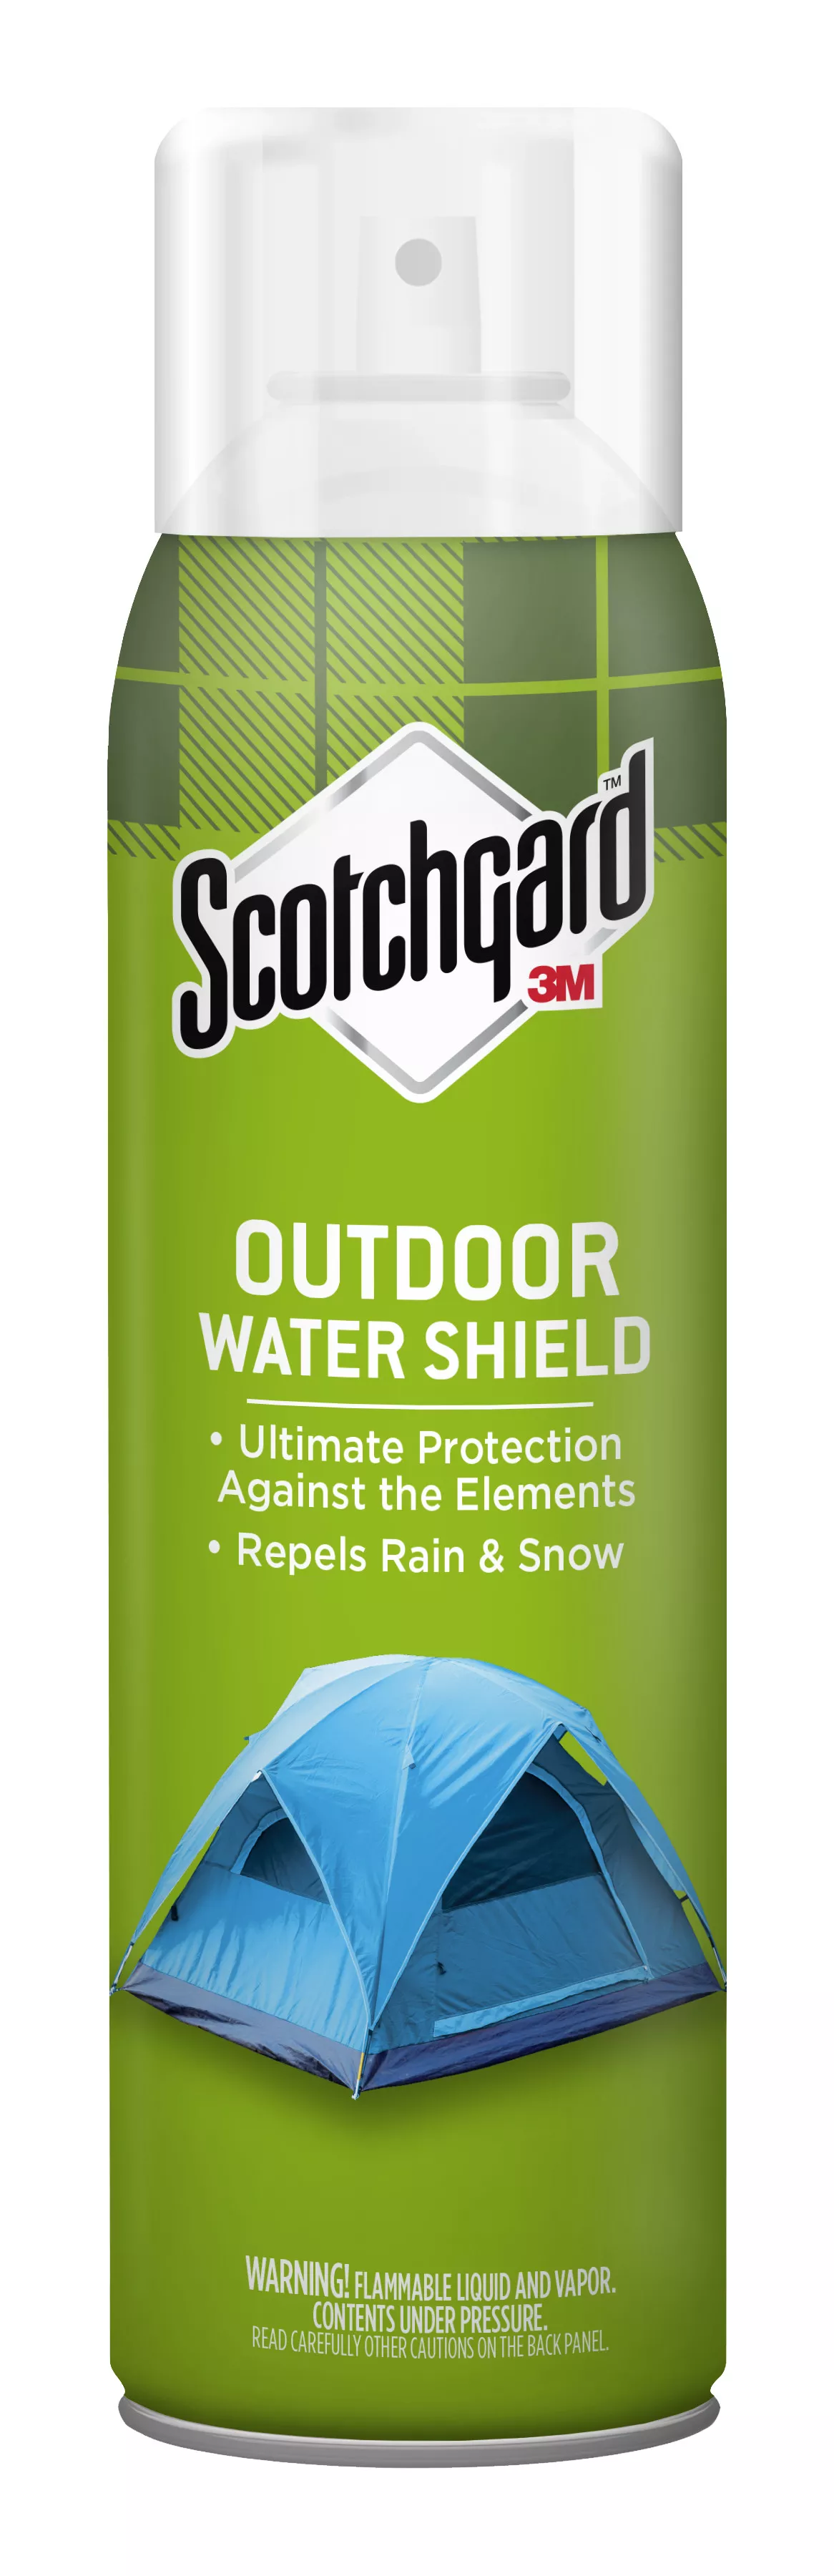 Scotchgard™ Outdoor Water Shield 5020-13, 13 oz. (368 g)